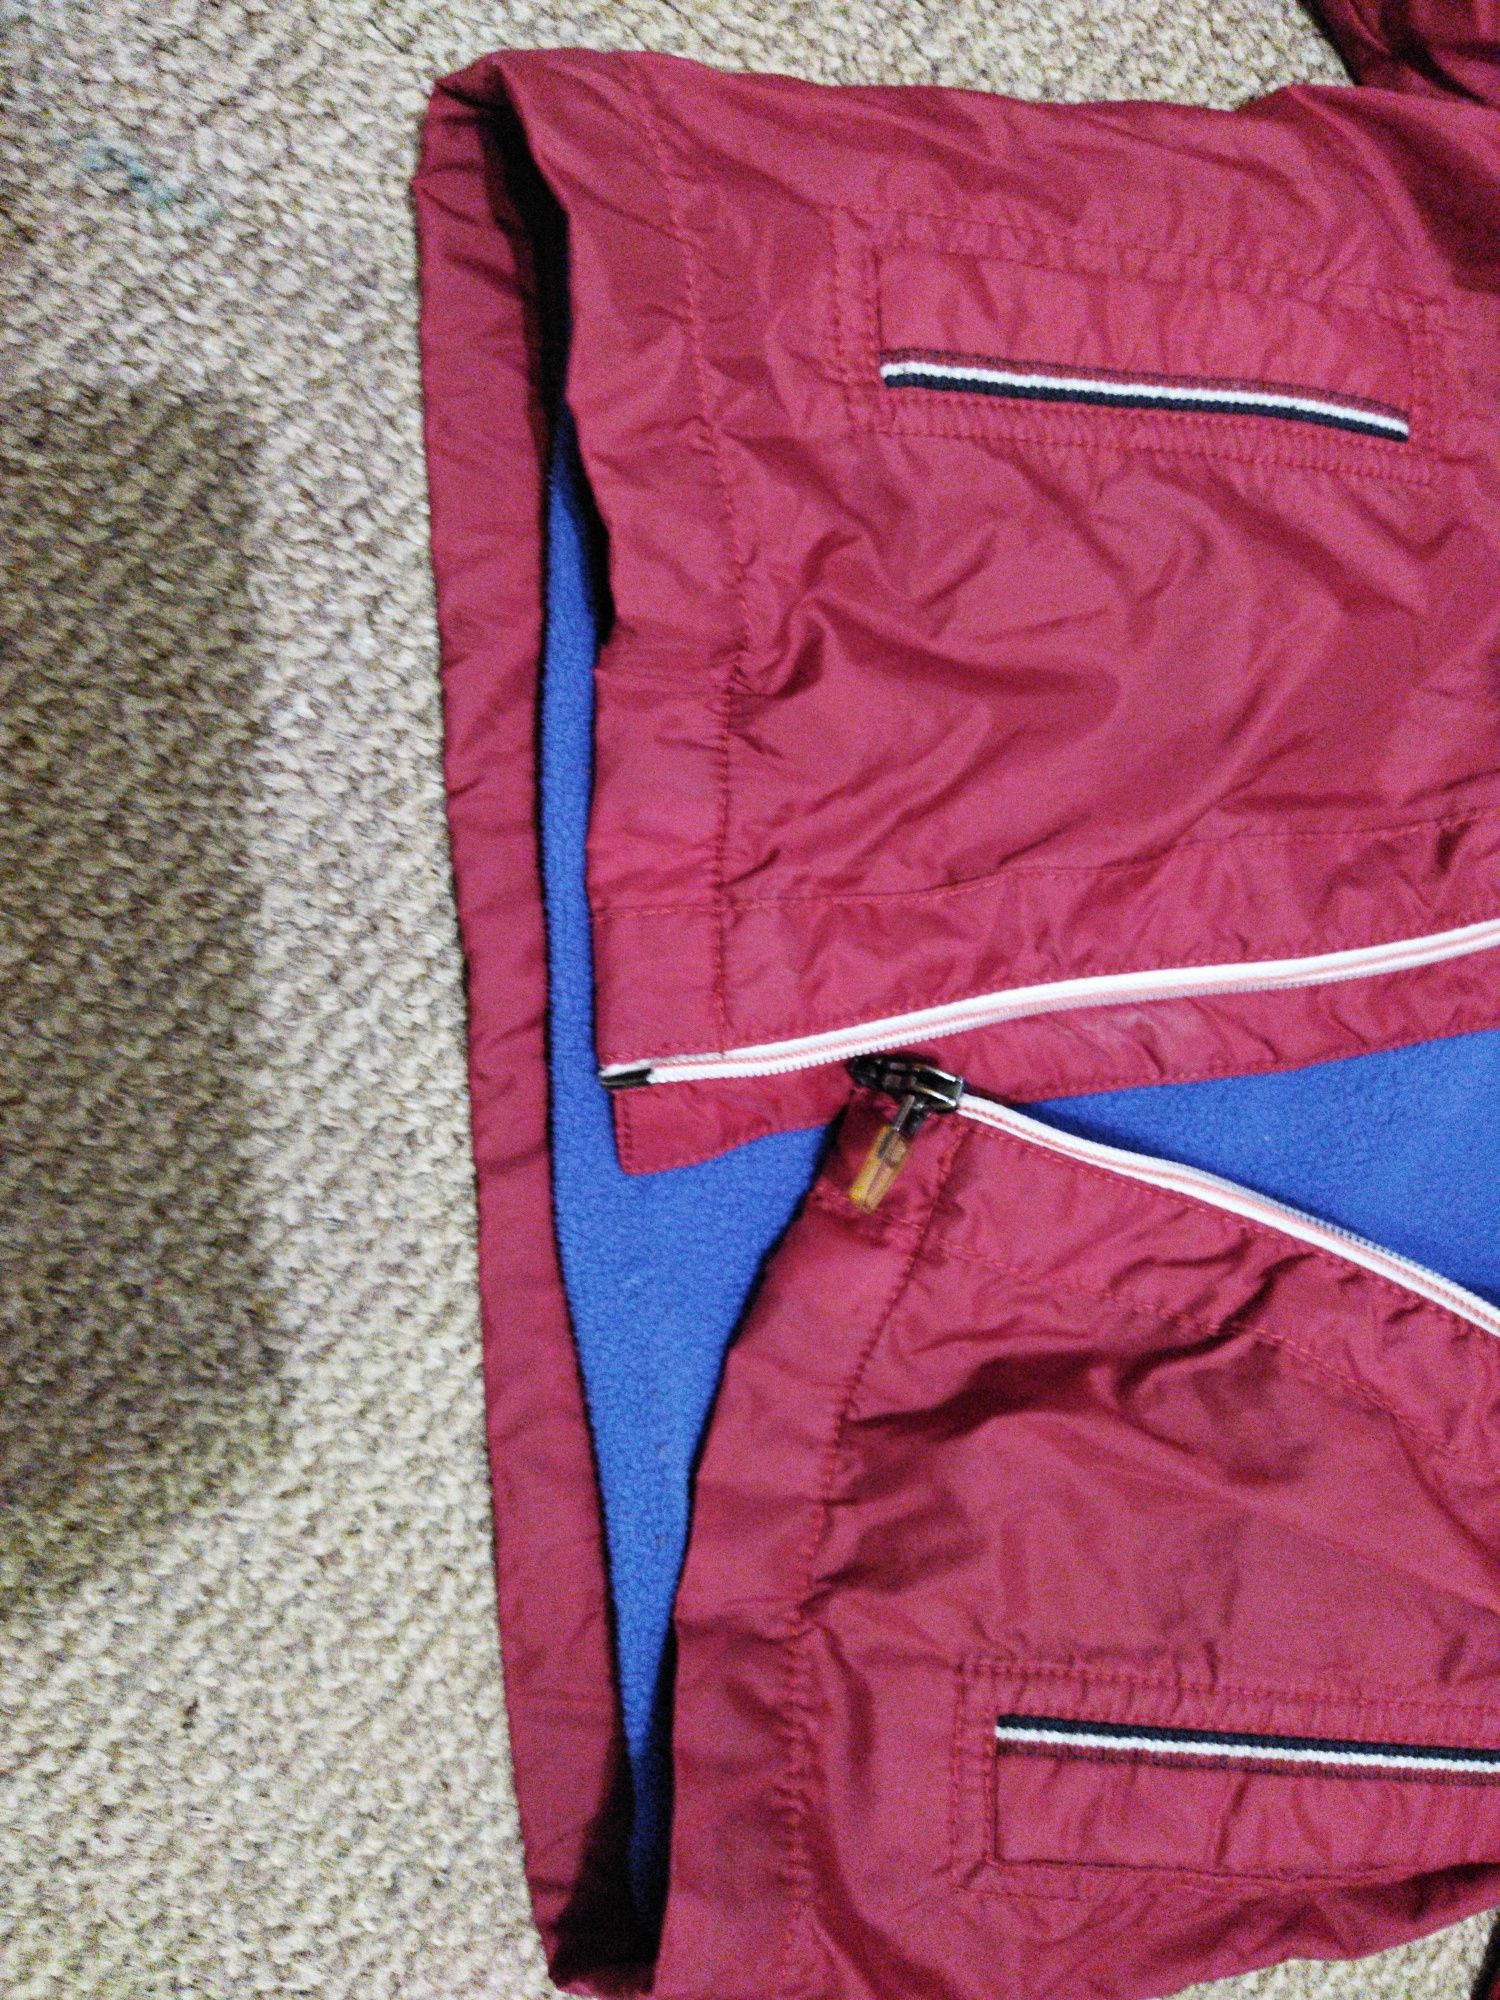 Ветровка демисезонная куртка Benetton Италия 110 размер